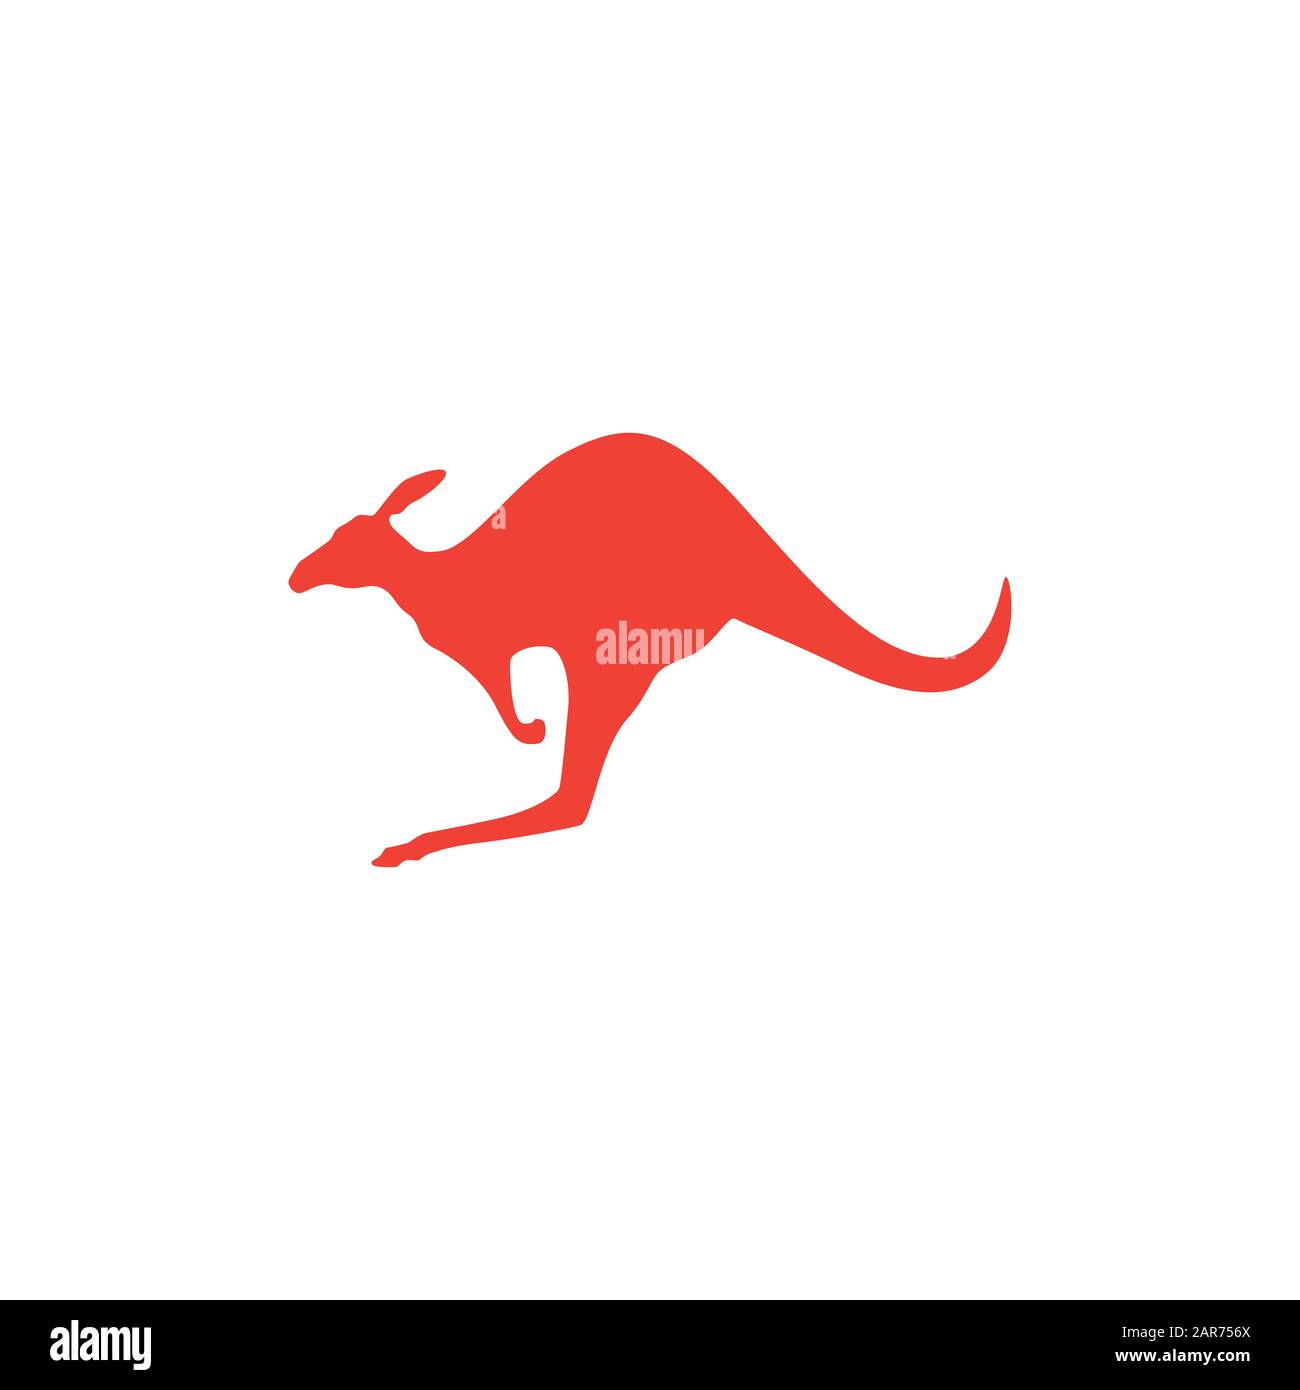 Chắc chắn bạn đã biết đến chú kangaroo đỏ tuyệt đẹp, biểu tượng của đất nước Úc. Hãy xem ảnh của chúng tôi để tìm hiểu thêm về con vật kỳ lạ và tài năng này.